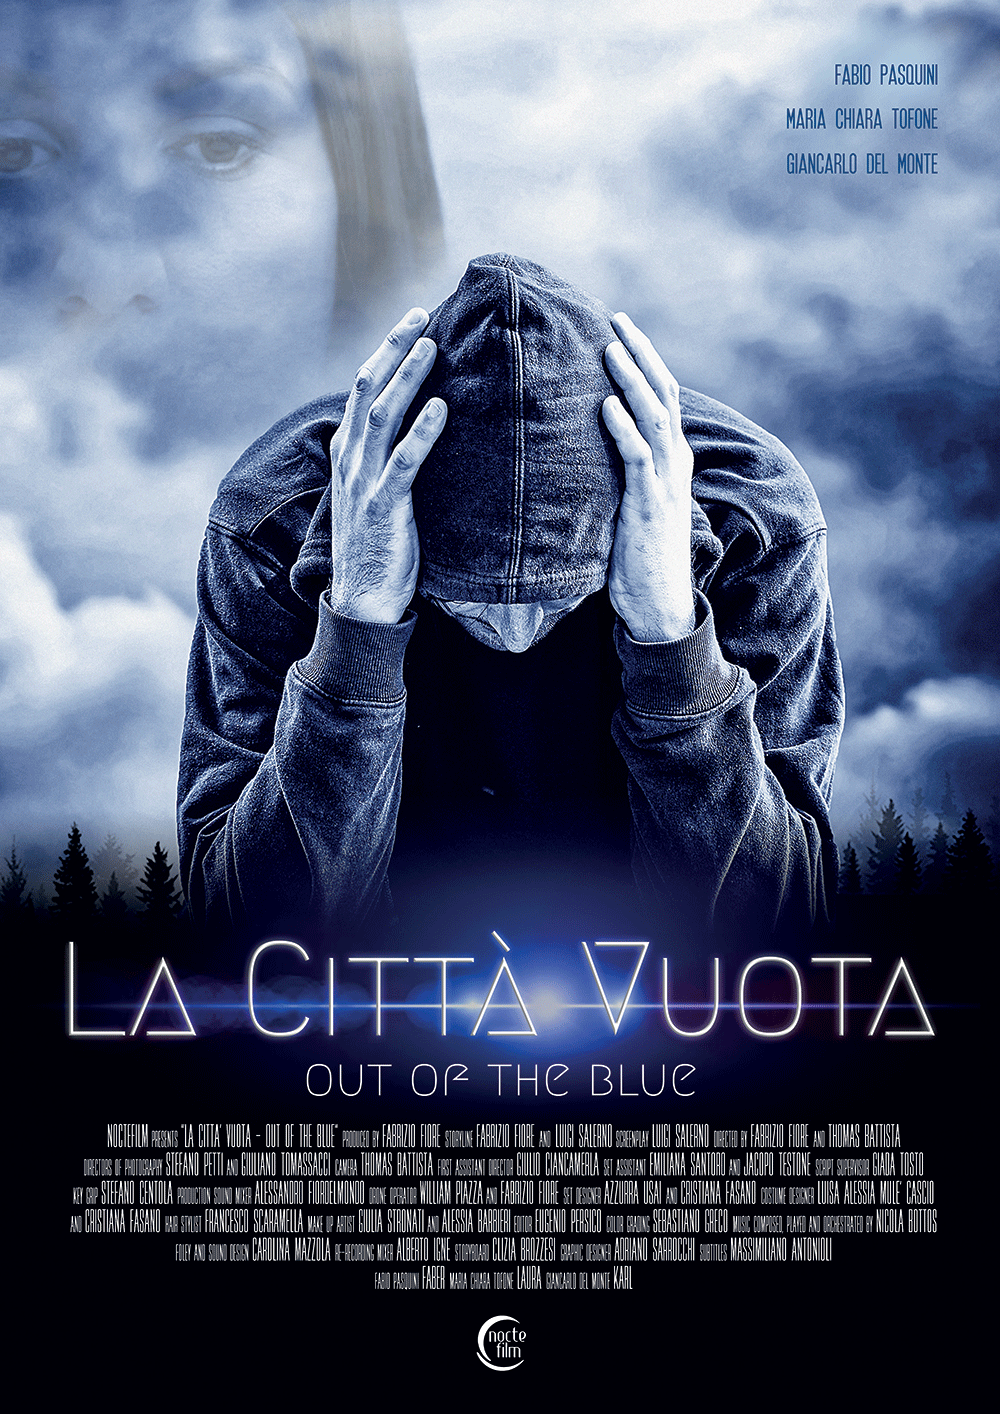 [RECENSIONE] La Città Vuota – Out of the Blue (Thomas Battista, Fabrizio Fiore)